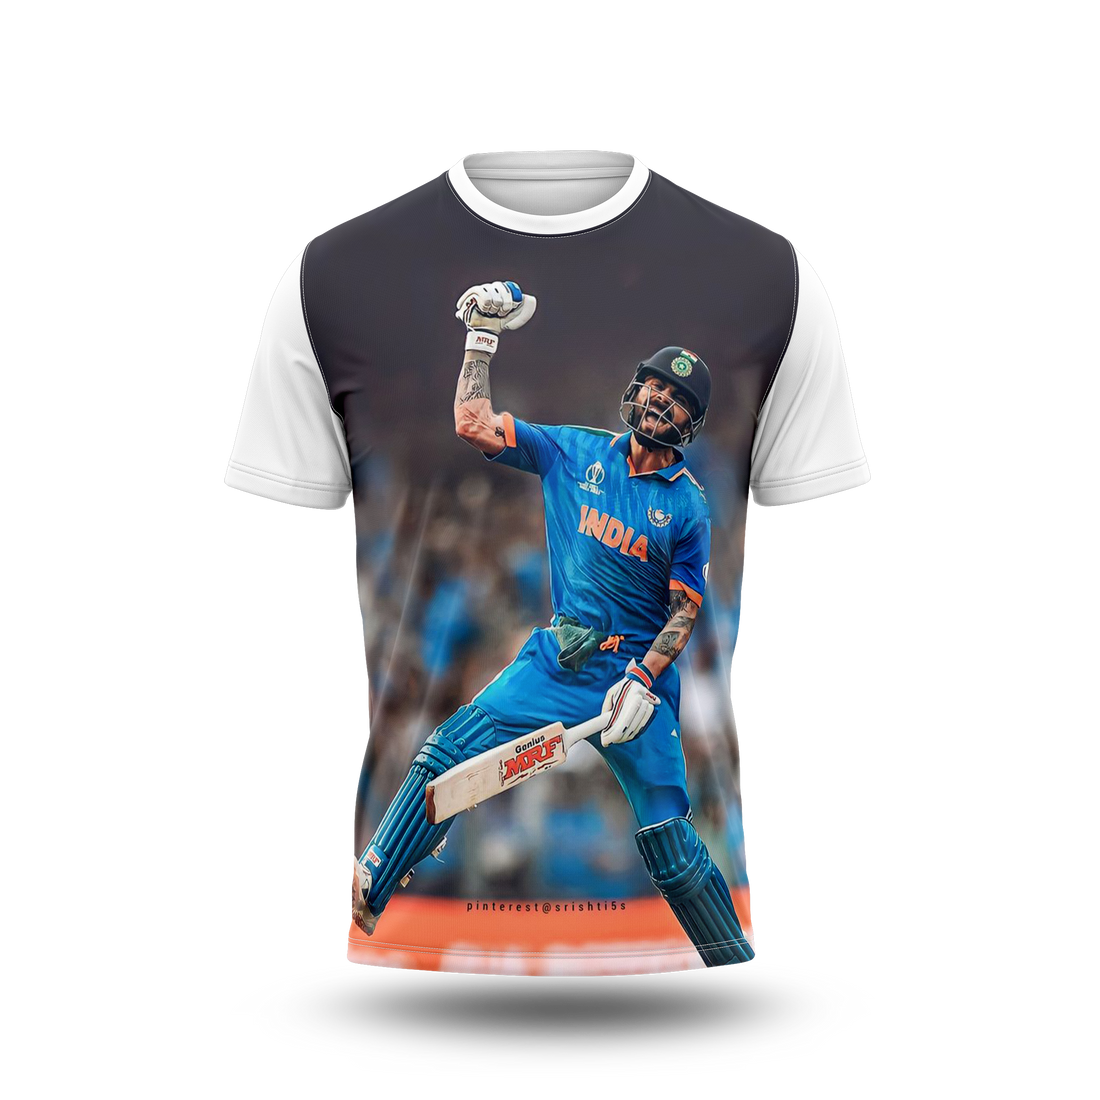 Virat Kohli Photo Printed T-Shirt.